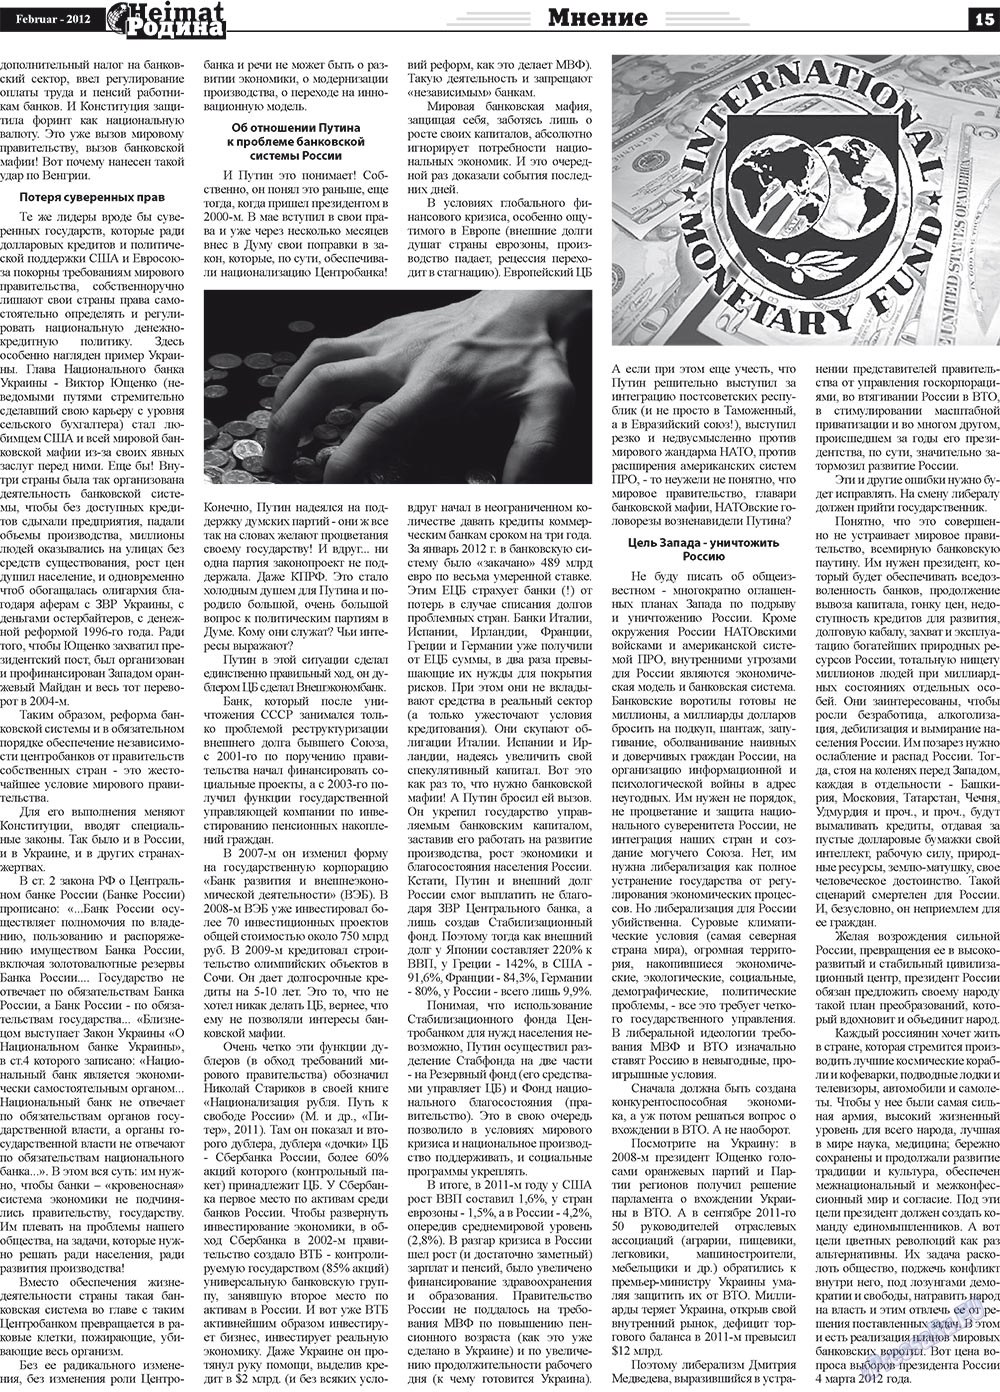 Heimat-Родина (газета). 2012 год, номер 2, стр. 15